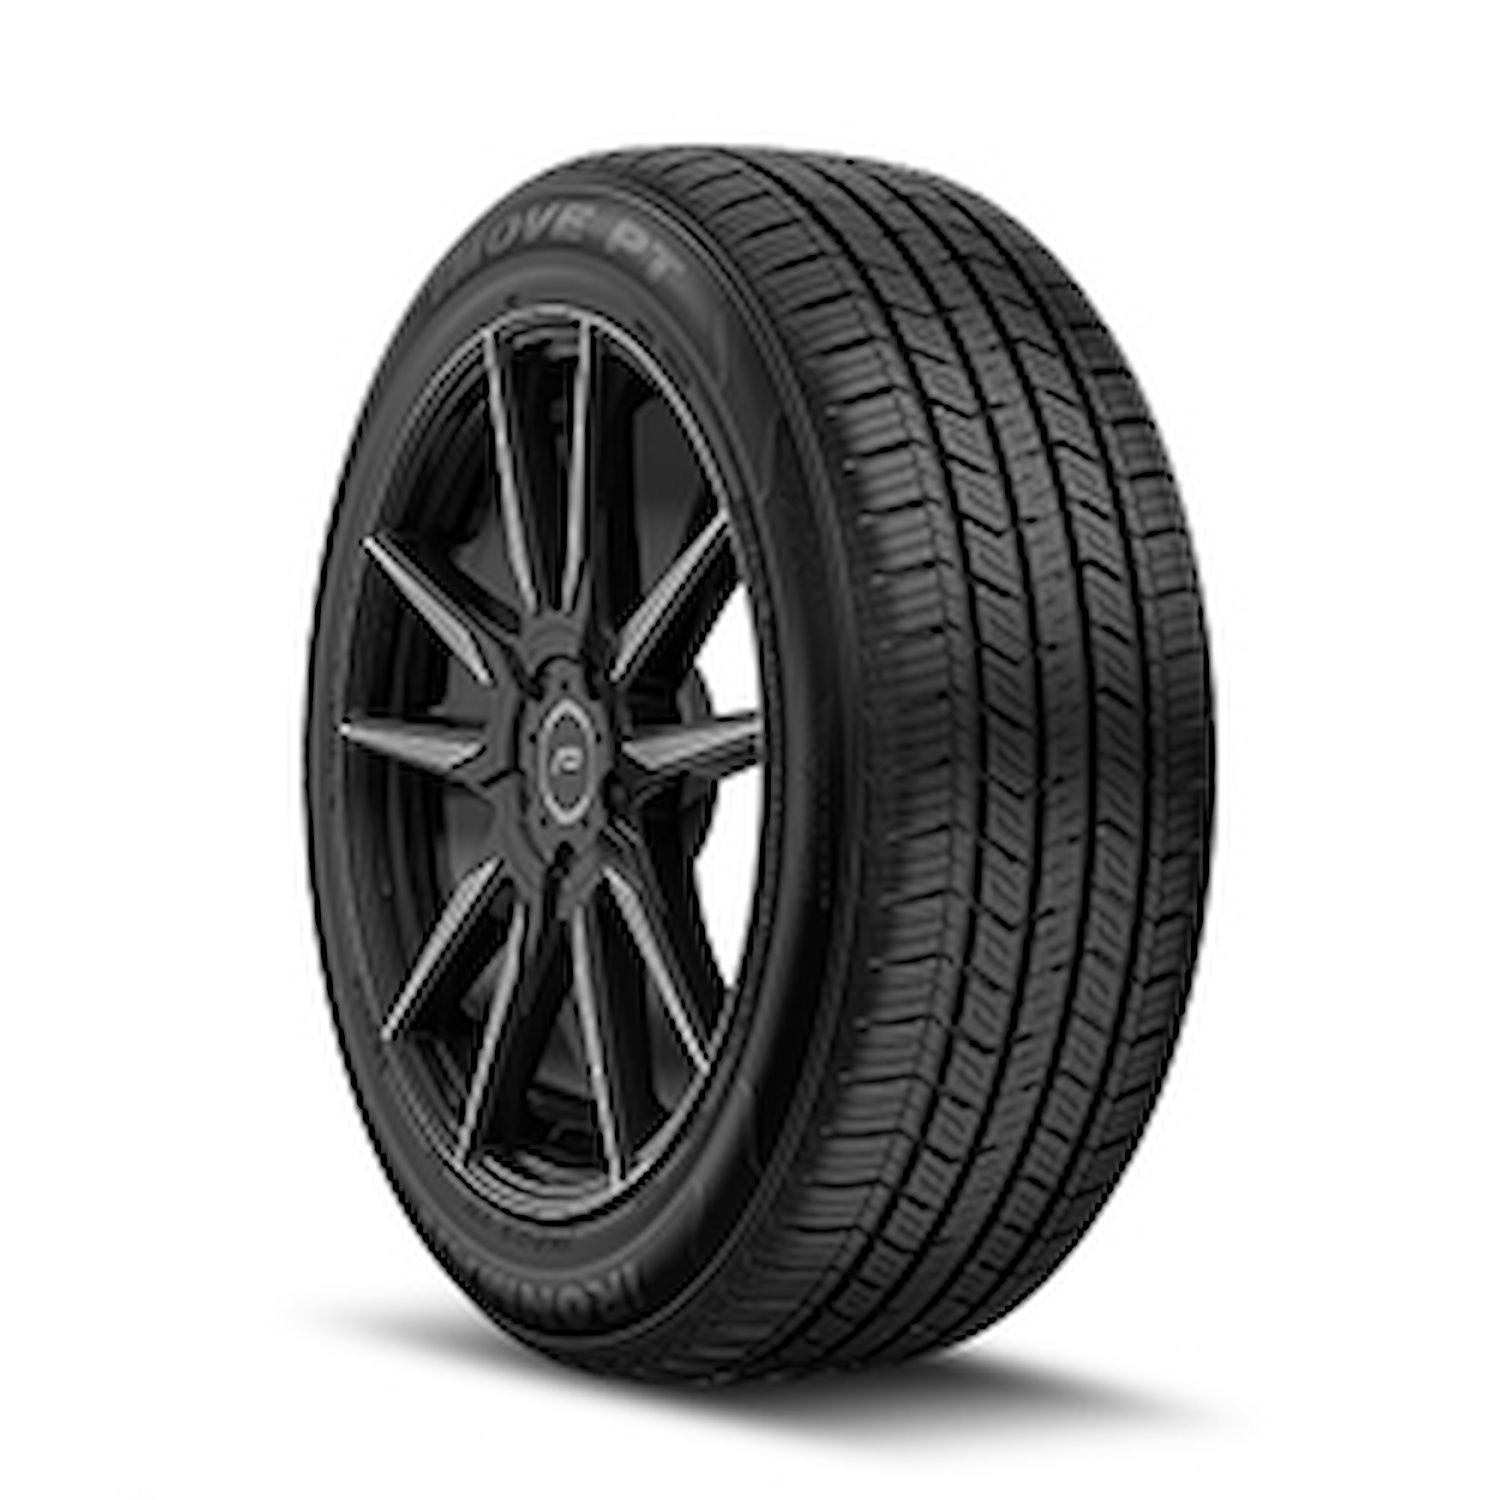 98467 iMOVE PT Tire, 225/60R16, 98H